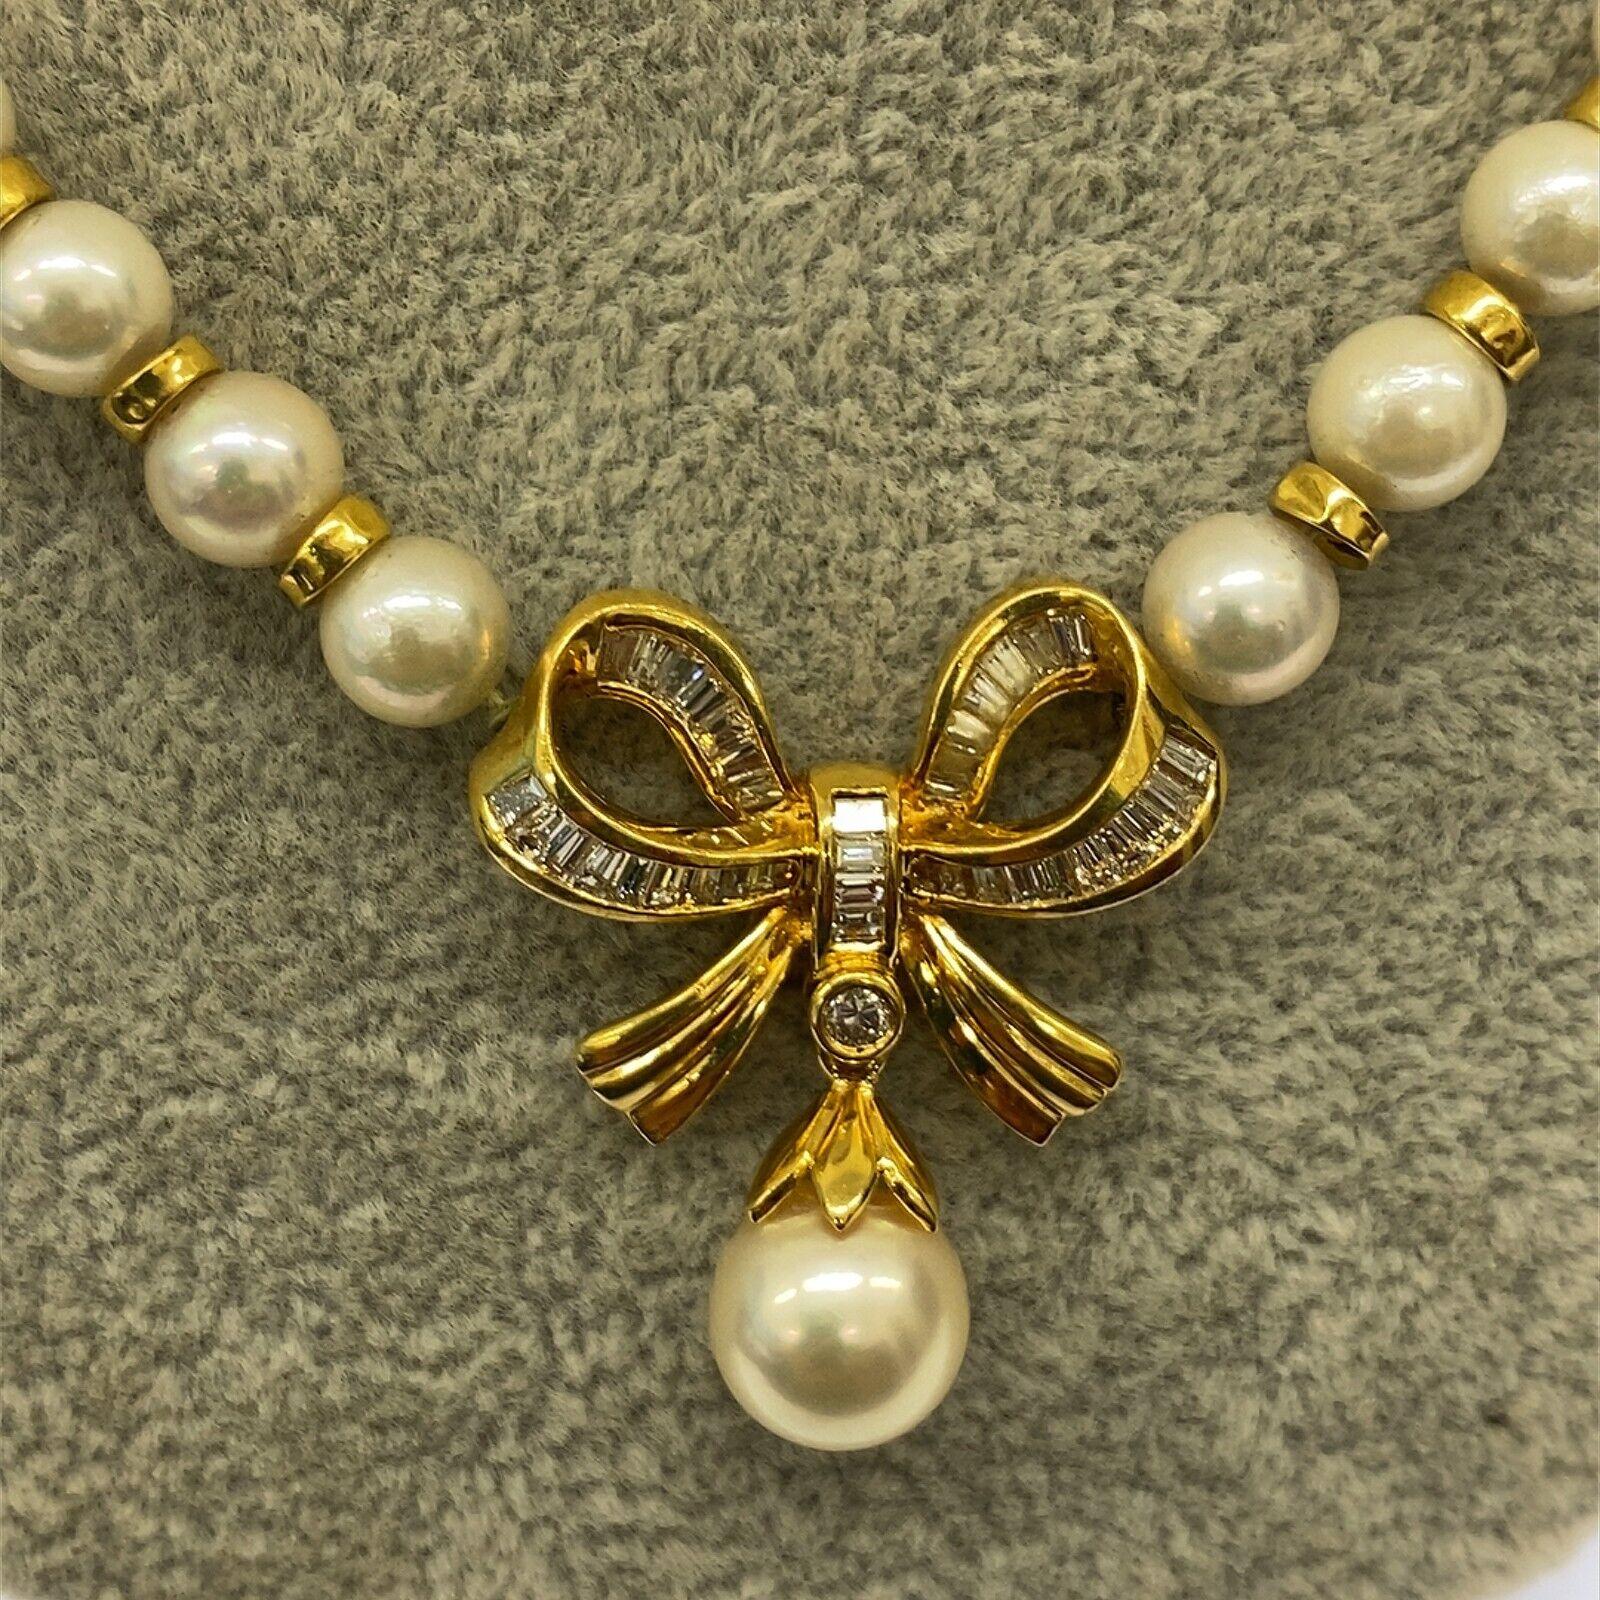 Magnifique collier de perles culturelles de 6-6.5mm avec pièce centrale en or jaune 18ct et baguette de diamant et goutte de perle de 8.8mm avec fermoir en or jaune 18ct

Informations supplémentaires : 
Poids total des diamants : 1.02 ct
Couleur du